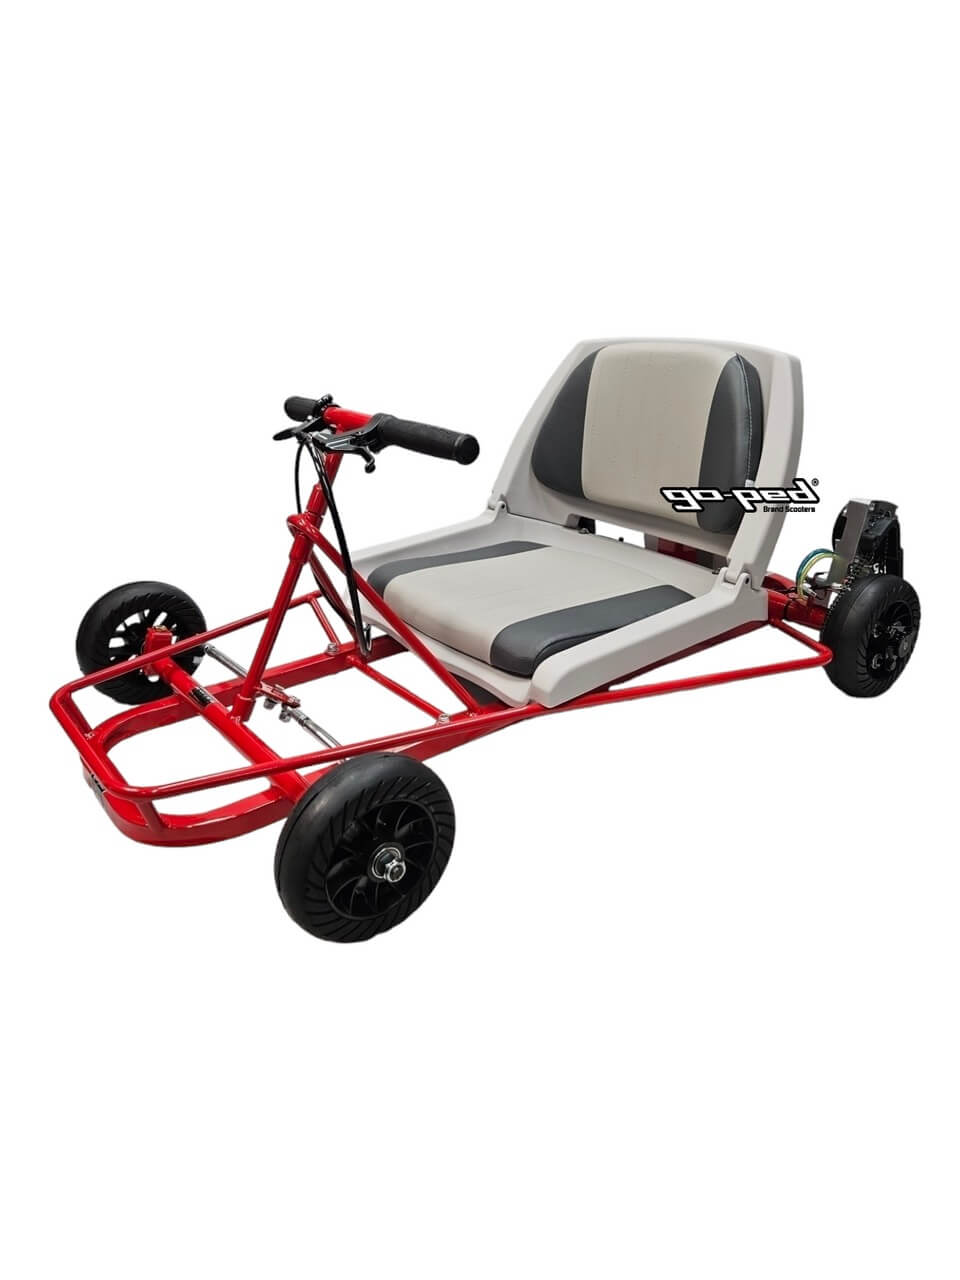 Go-Ped SUPER GO QUAD ROLLER Folding Seat Gas Go-Kart, No Engine